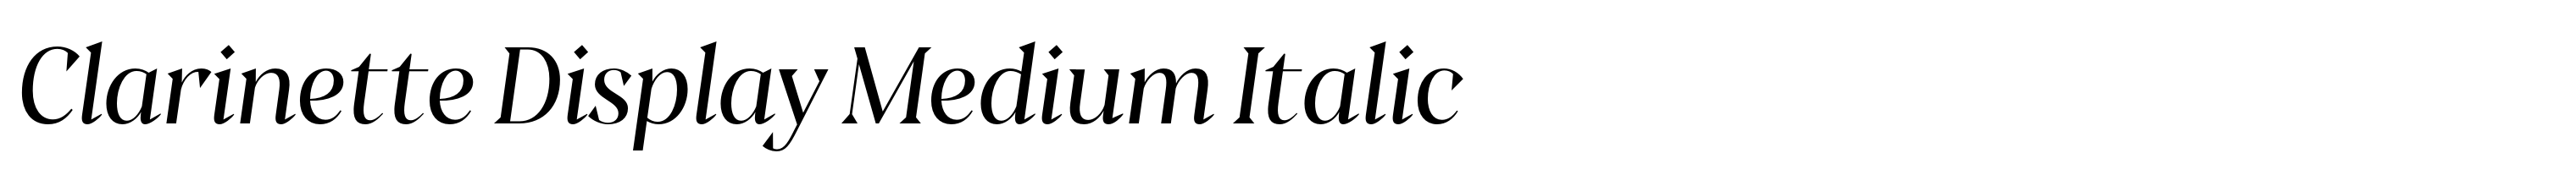 Clarinette Display Medium Italic